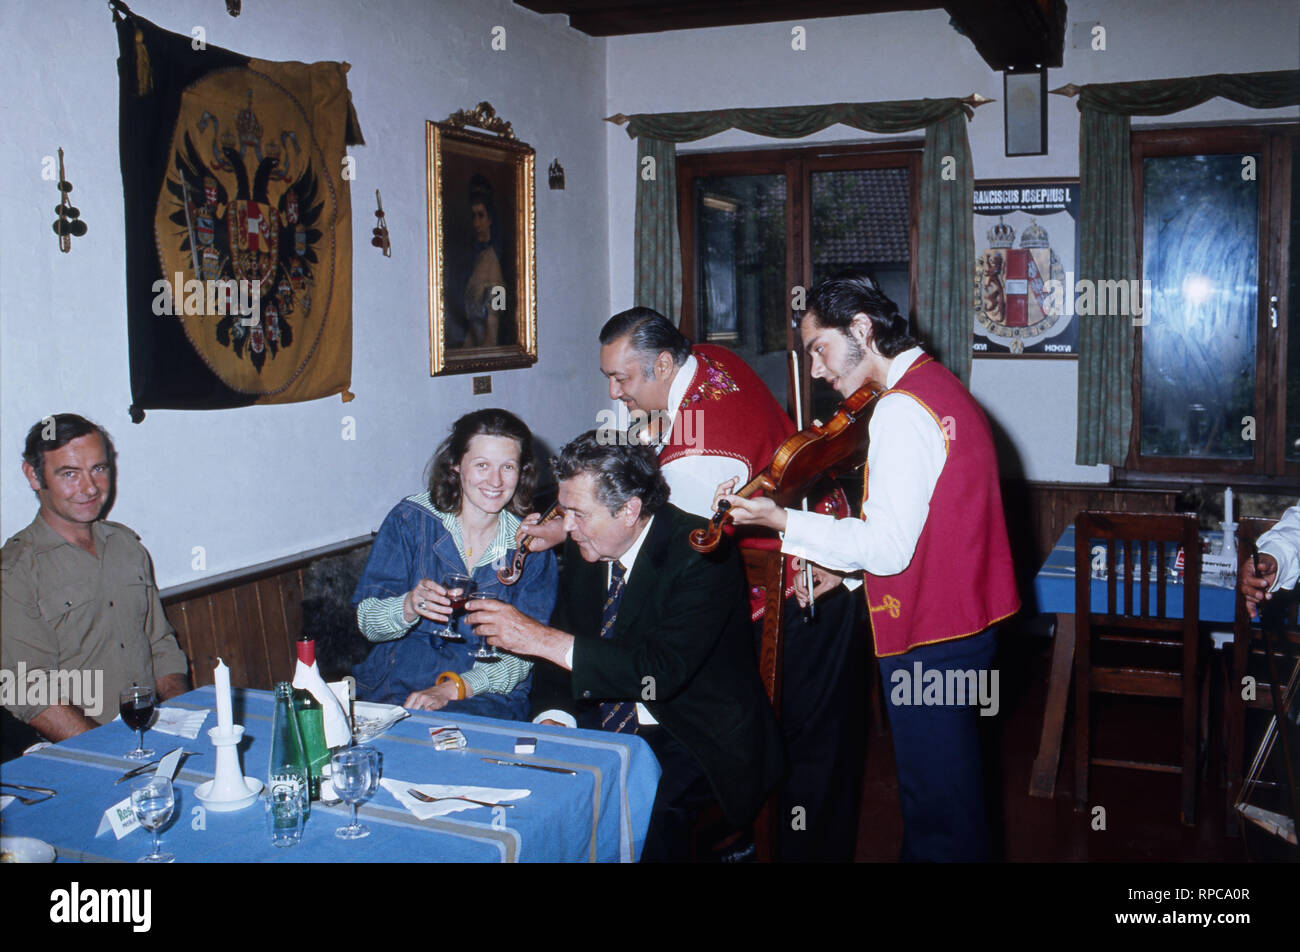 Tassilo Fürst von Fürstenberg besucht ein ungarisches Restaurant in Strobl, Österreich 1985. Tassilo Prince of Fuerstenberg visiting a Hungarian restaurant at Strobl, Austra 1985. Stock Photo